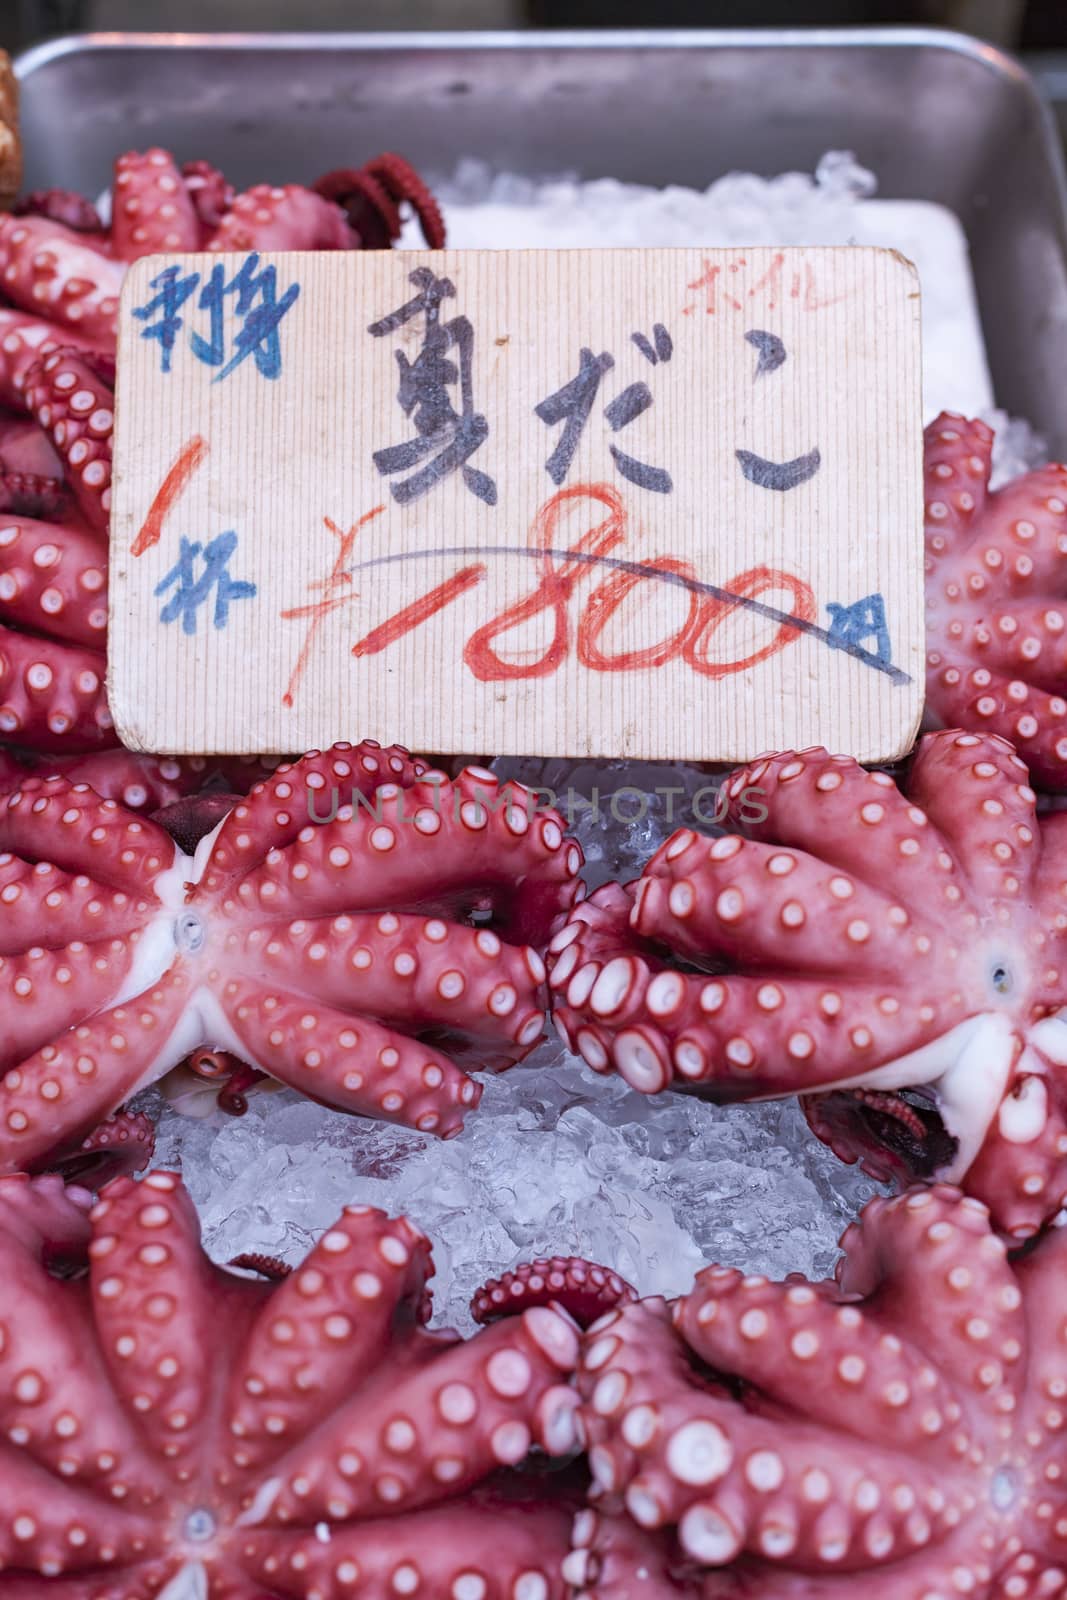 Red live octopus at Tsukiji fish market, Tokyo, Japan

